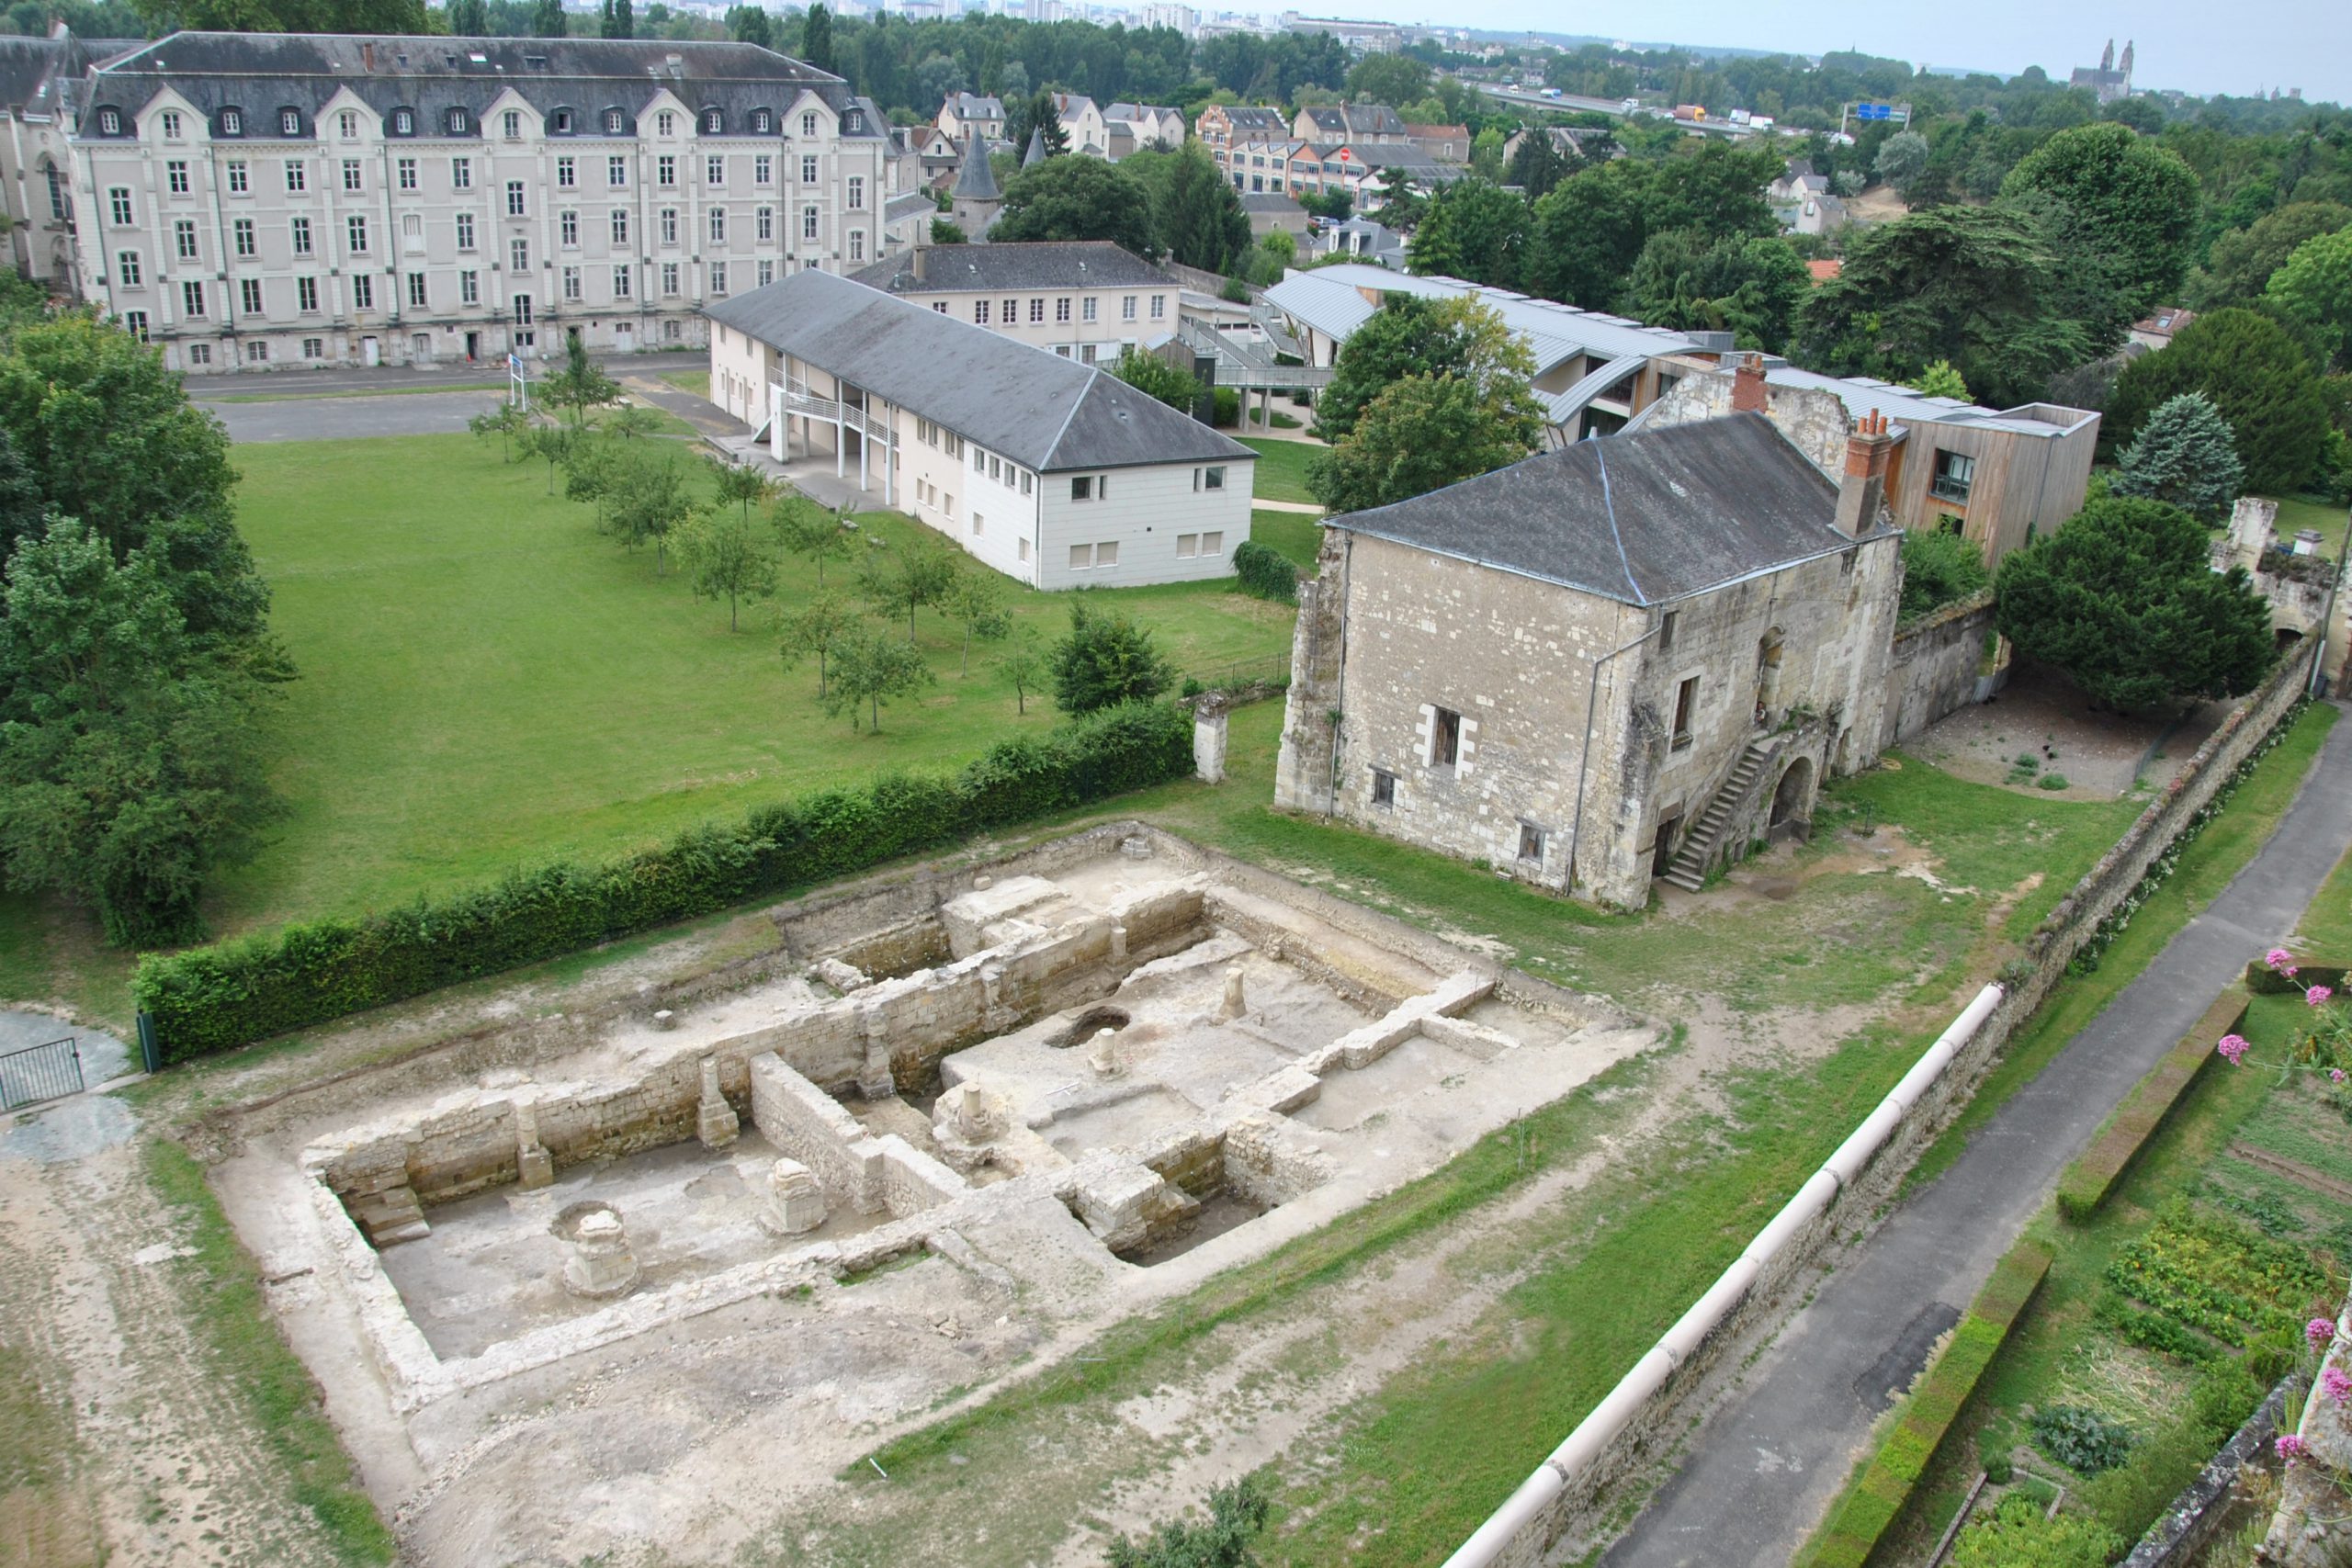 L'ancienne hôtellerie de Marmoutier à la fin du 12e siècle : partie ouest encore en élévation et partie détruite en cours de fouille.